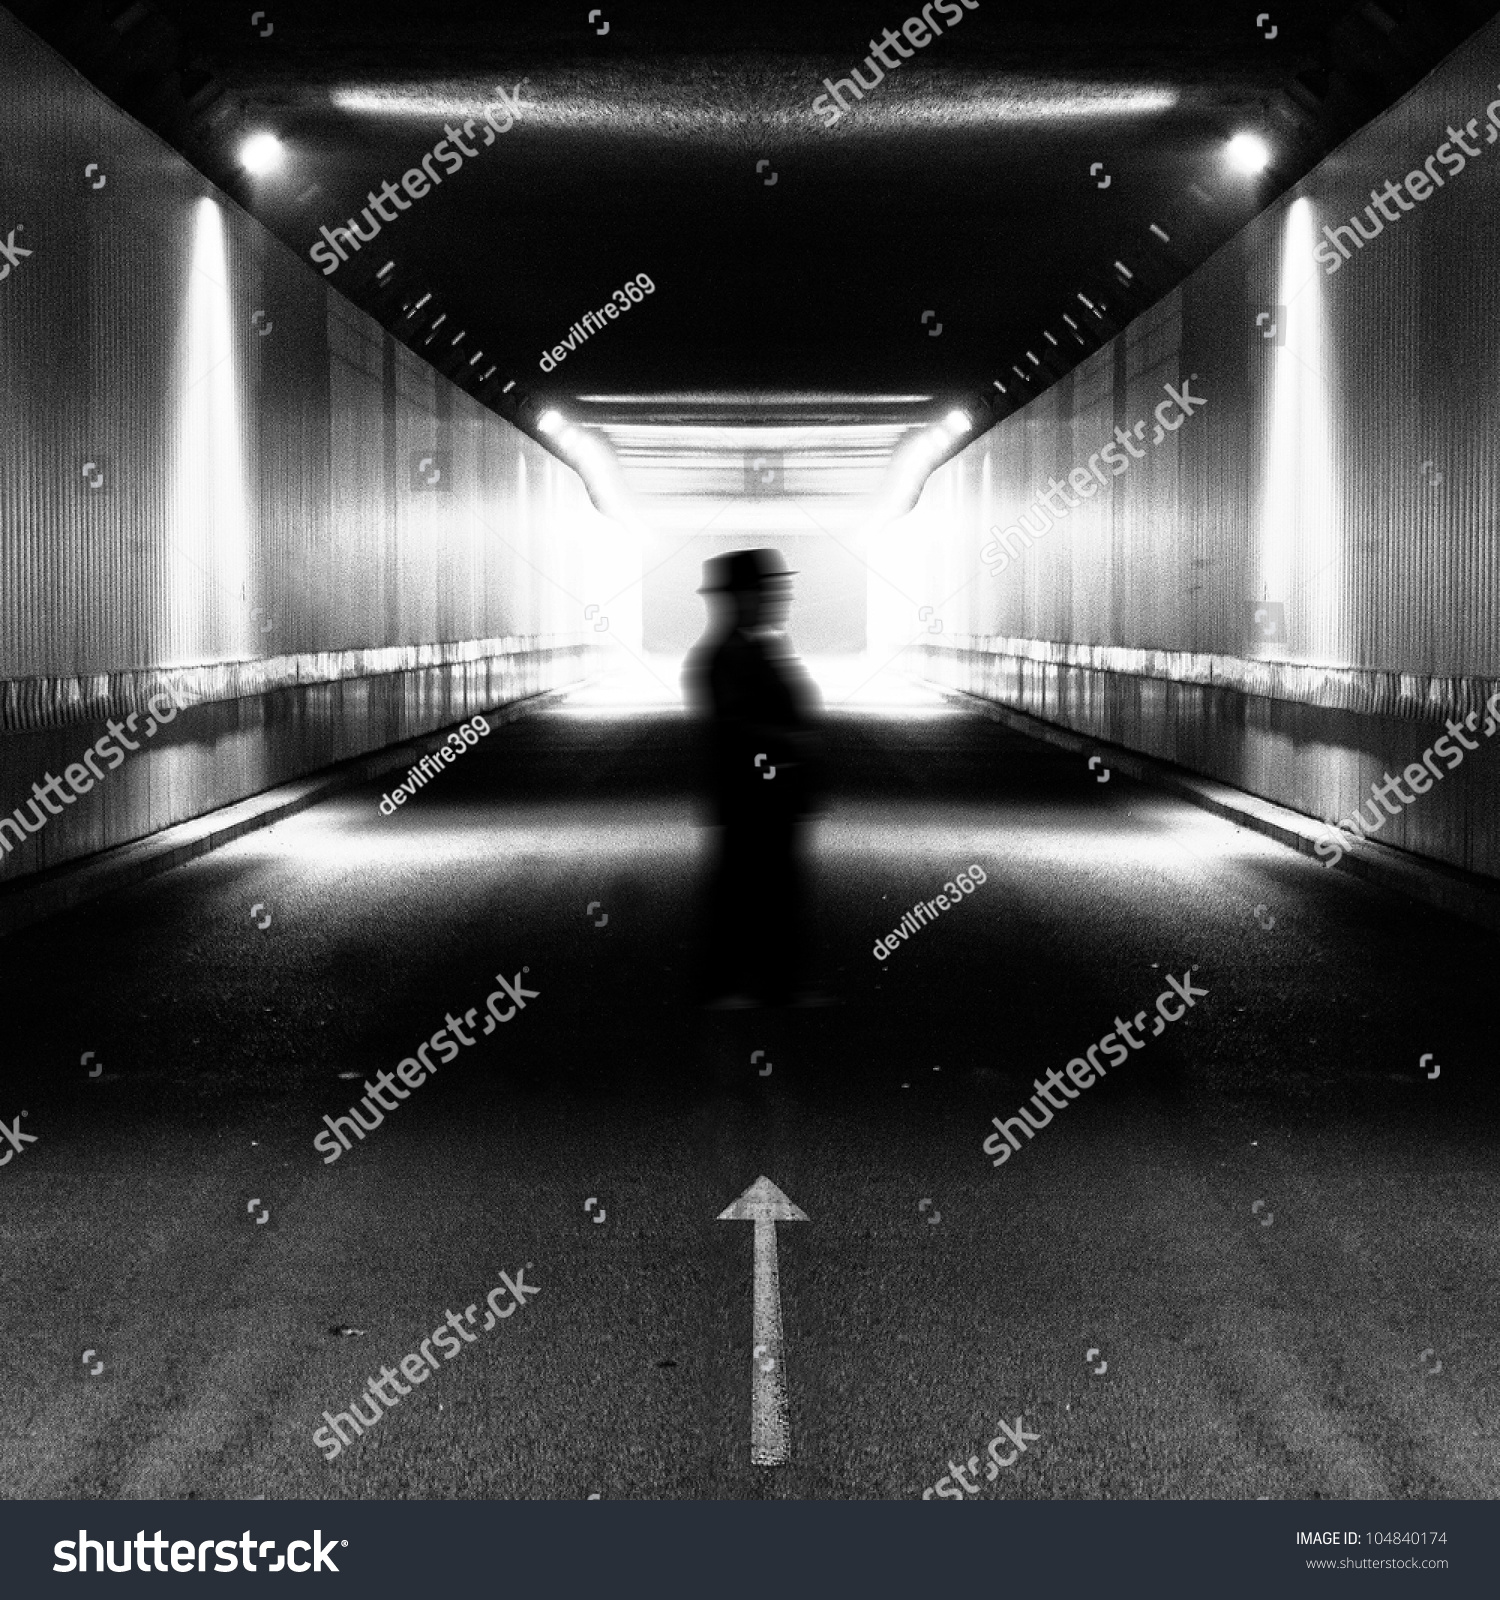 Silhouette Man Walking In Light Tunnel Stock Photo ...
 Silhouette Man Walking Tunnel